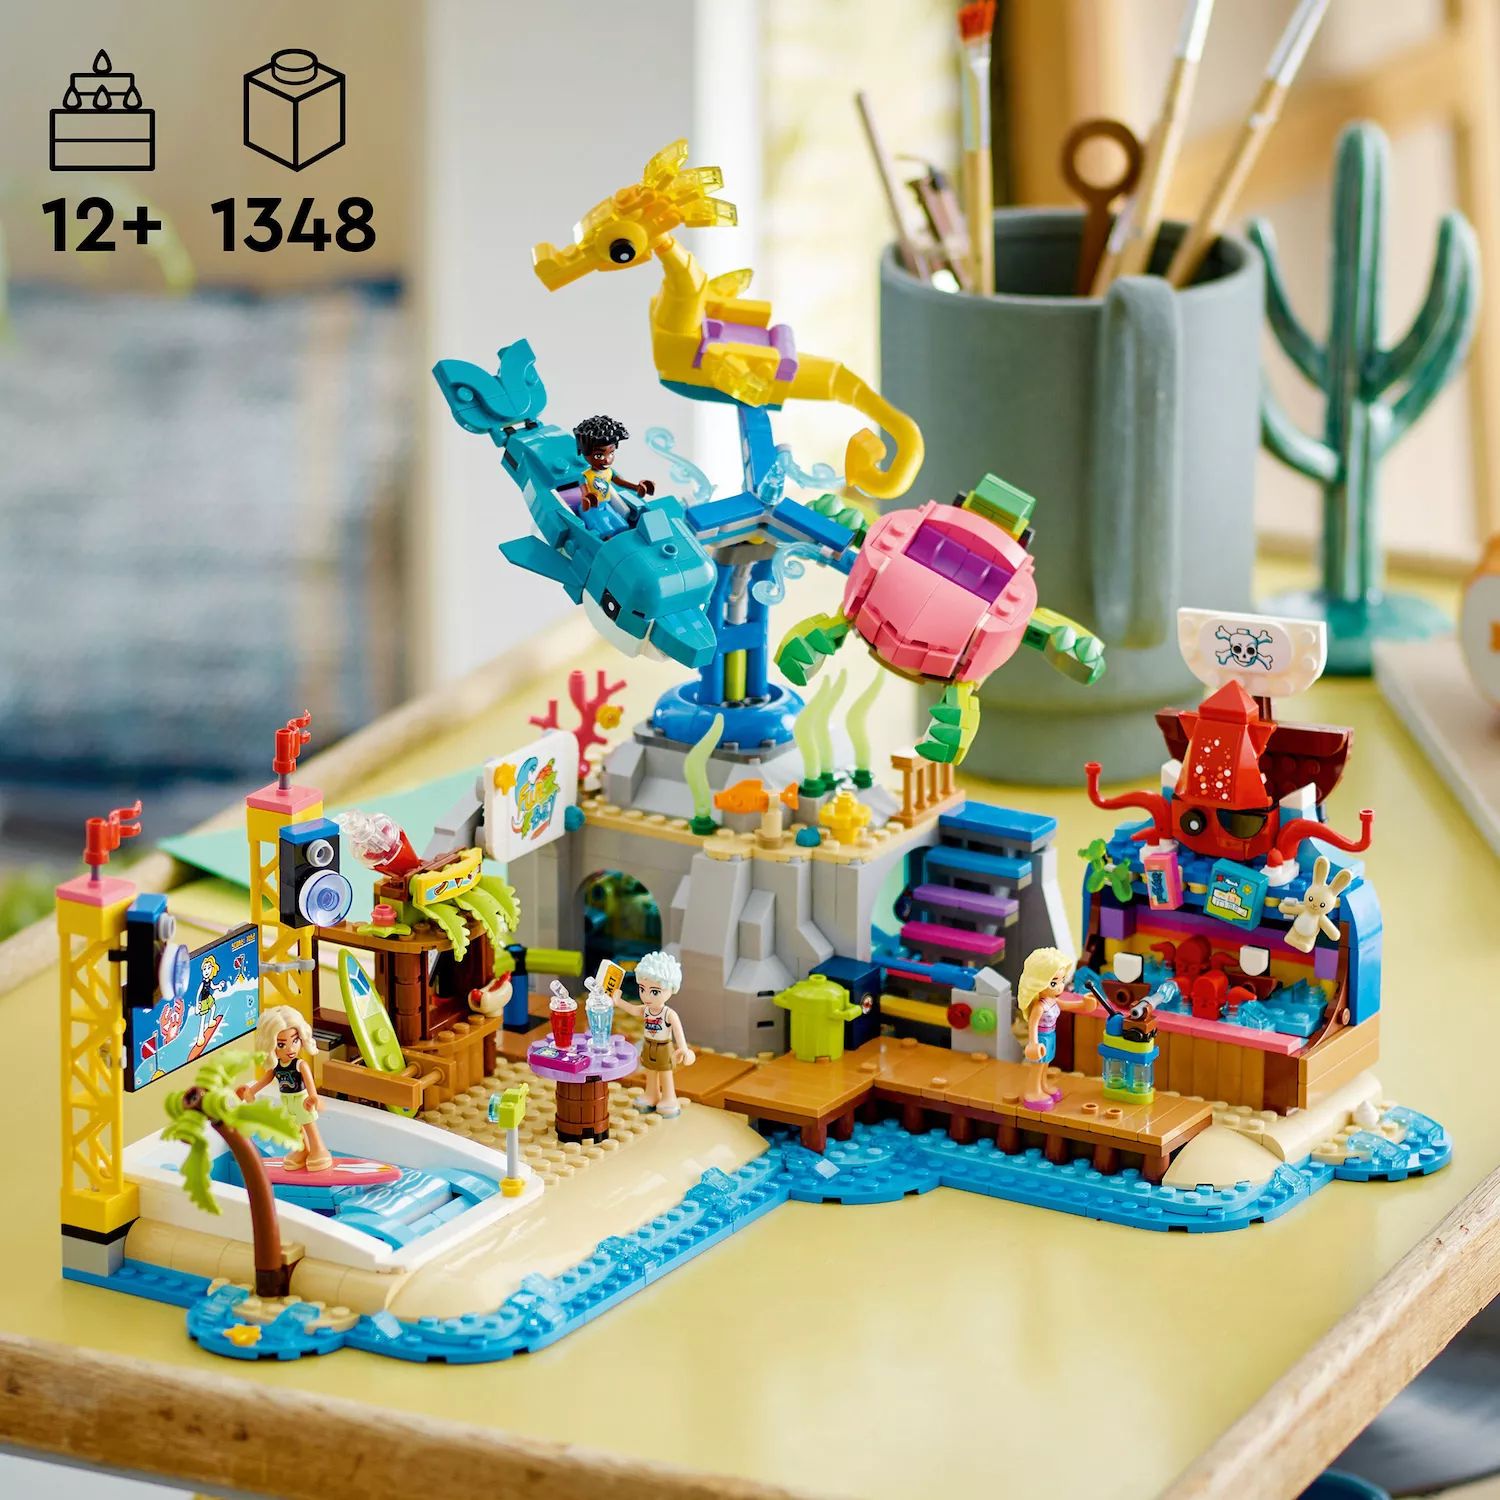 Конструктор LEGO Friends для подростков в пляжном парке развлечений 41737 (1348 деталей) LEGO конструктор lego friends 41737 пляжный парк развлечений 1348 дет